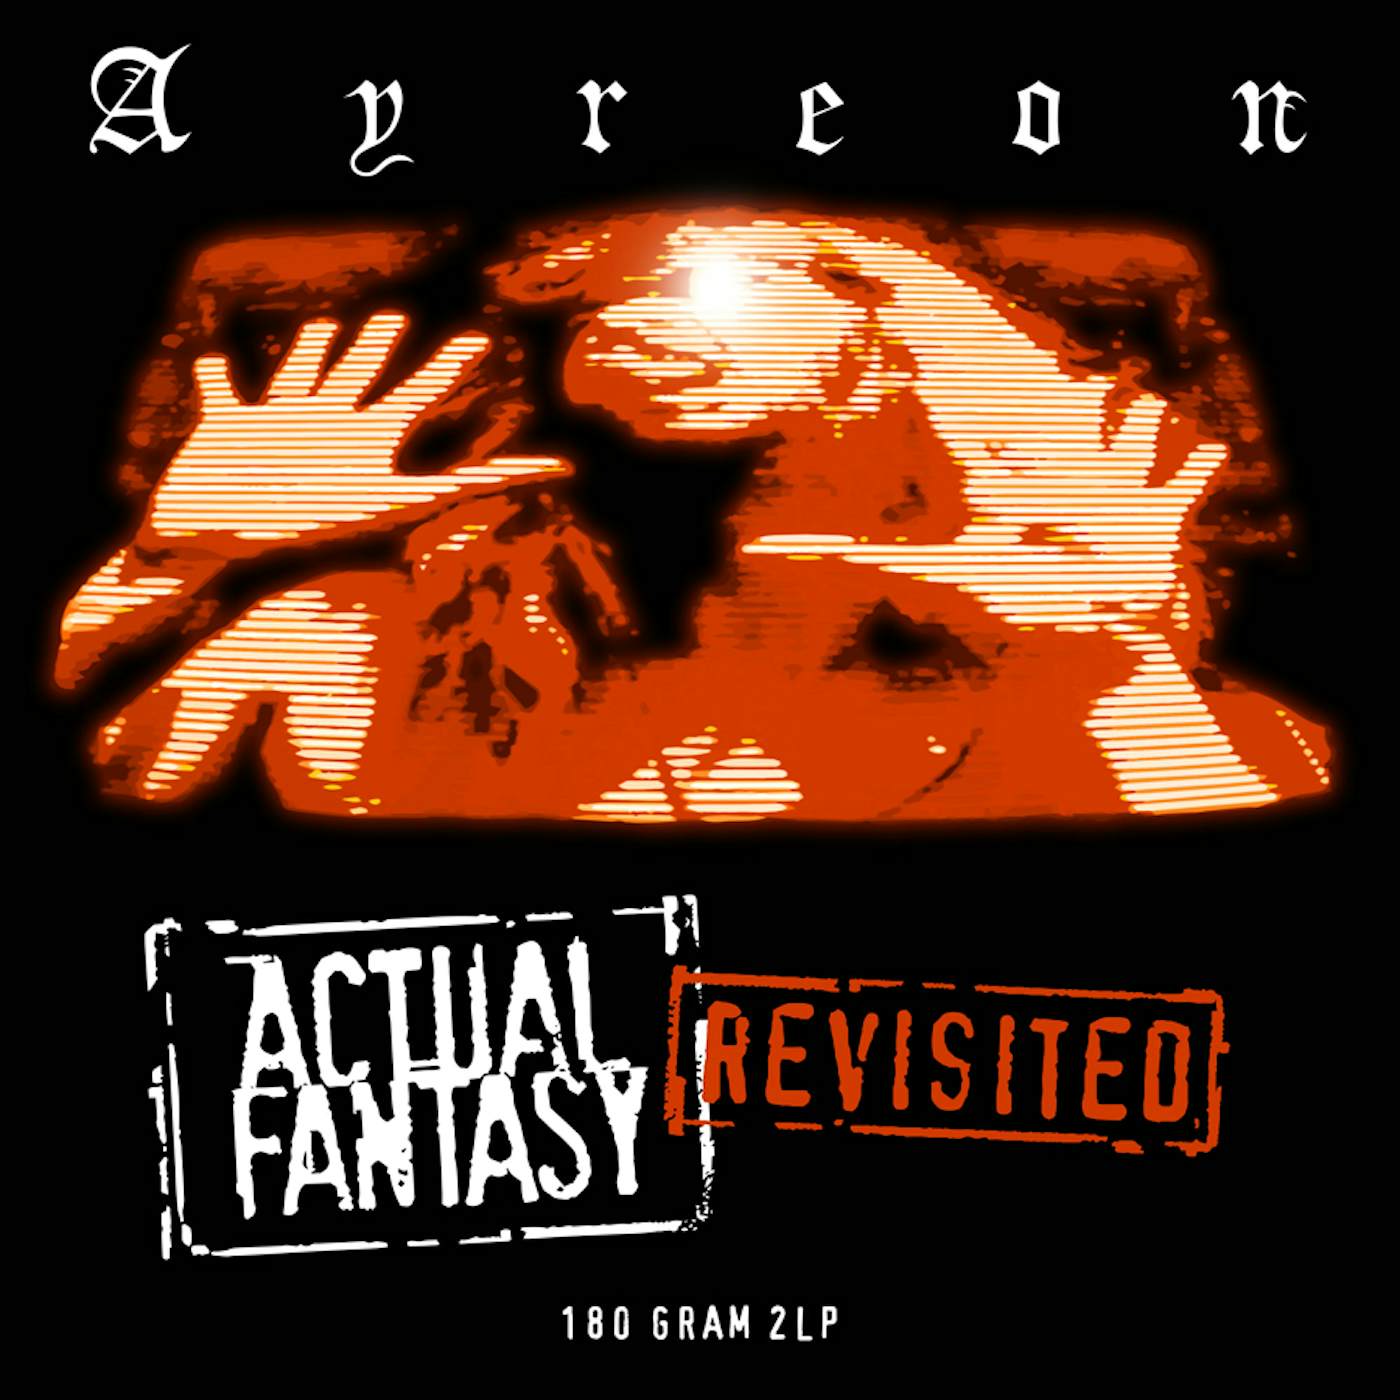 Ayreon Actual Fantasy Revisited Vinyl Record